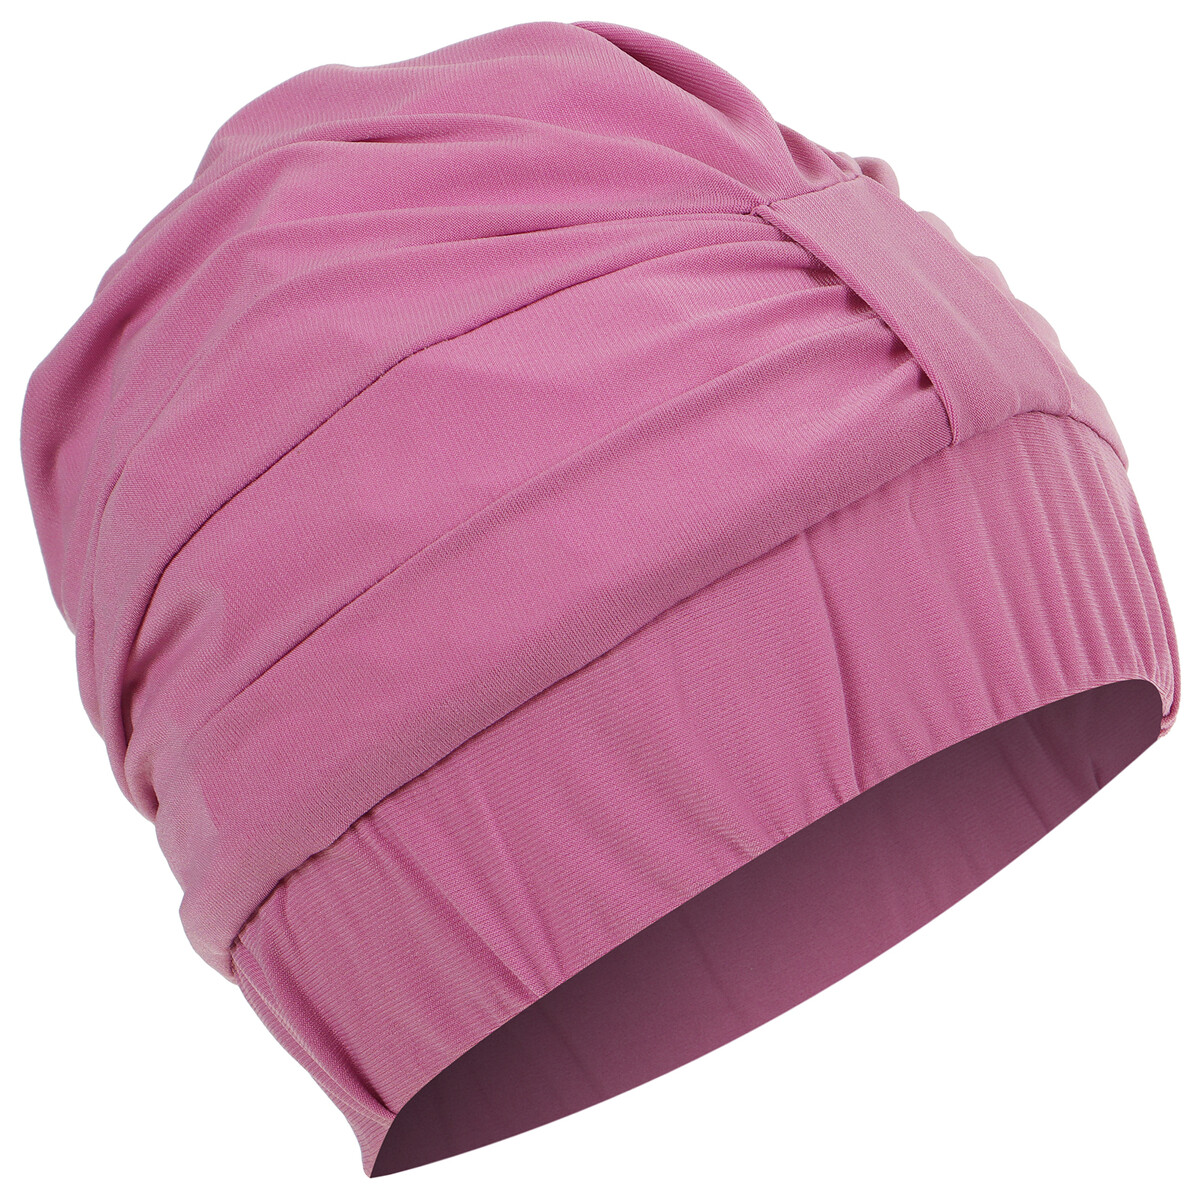 Шапочка для плавания взрослая onlytop, тканевая, обхват 54-60 см, цвет лиловый шапочка для плавания atemi pu 130 тканевая с полиуретановым покрытием розовый 3d